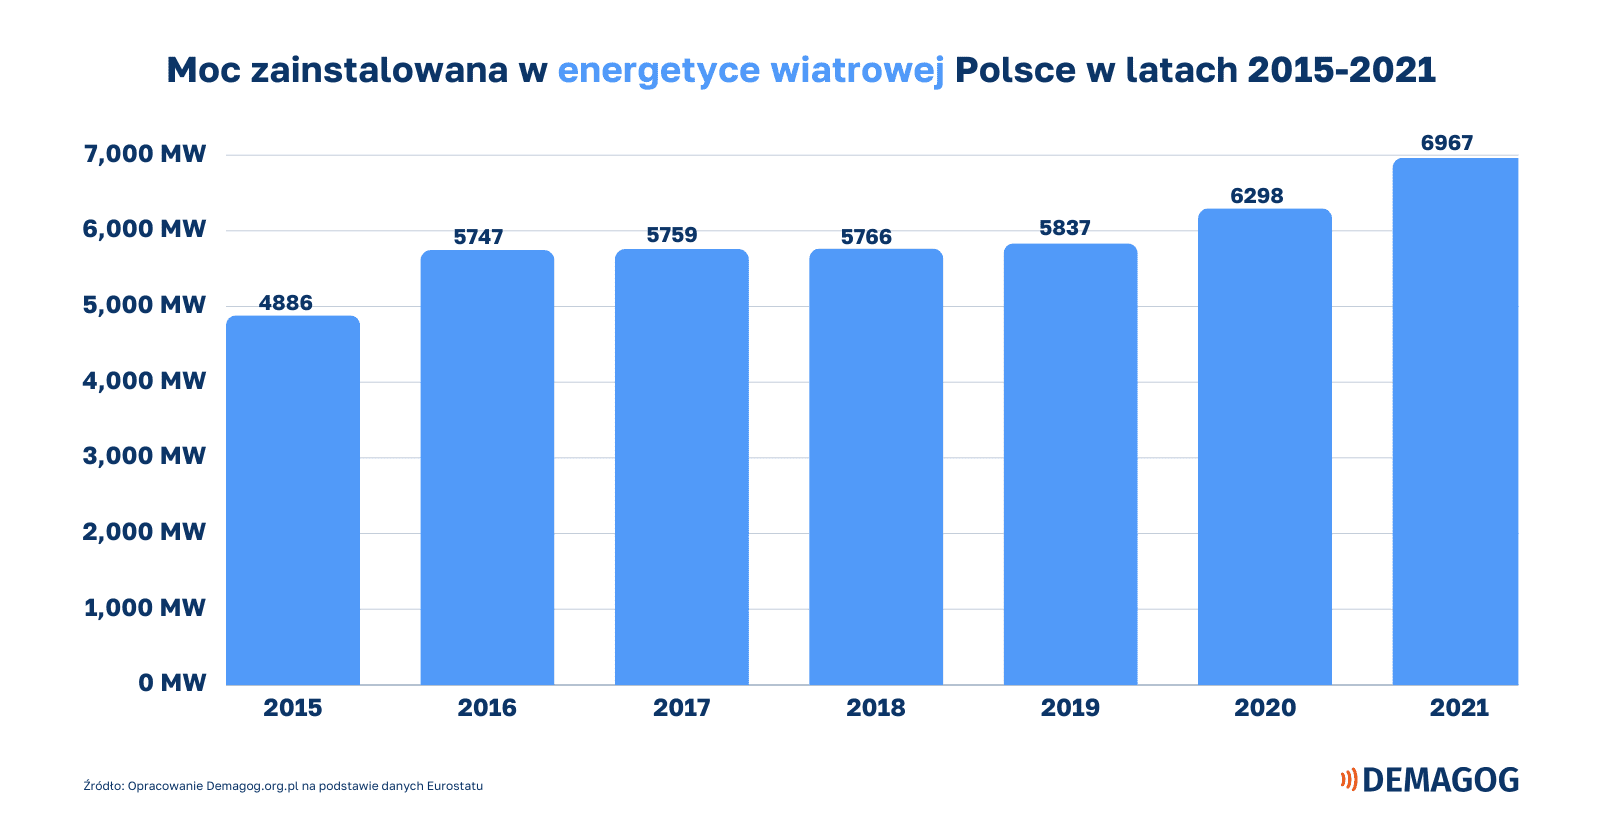 wykres słupkowy o mocy zainstalowanej w energii wiatrowej w Polsce w latach 2015-2021